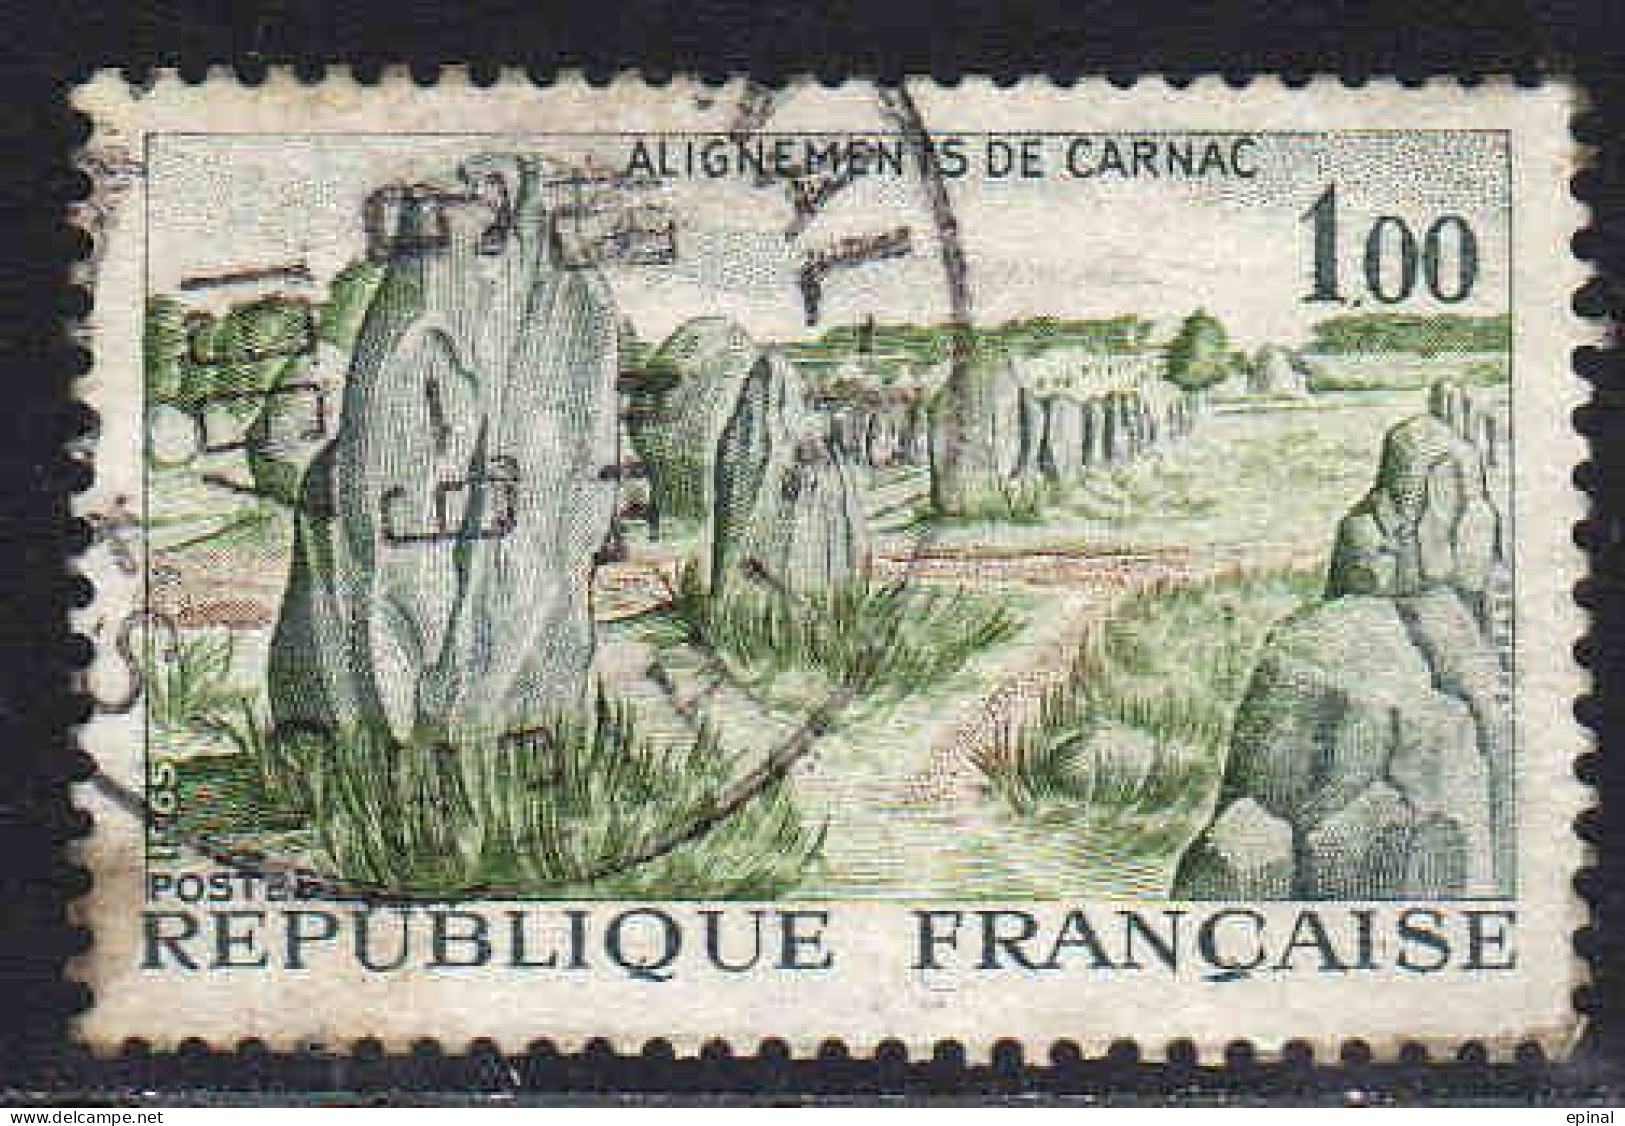 FRANCE : N° 1435-1436-1437-1438-1439-1440-1441 oblitérés (Série touristique) - PRIX FIXE -